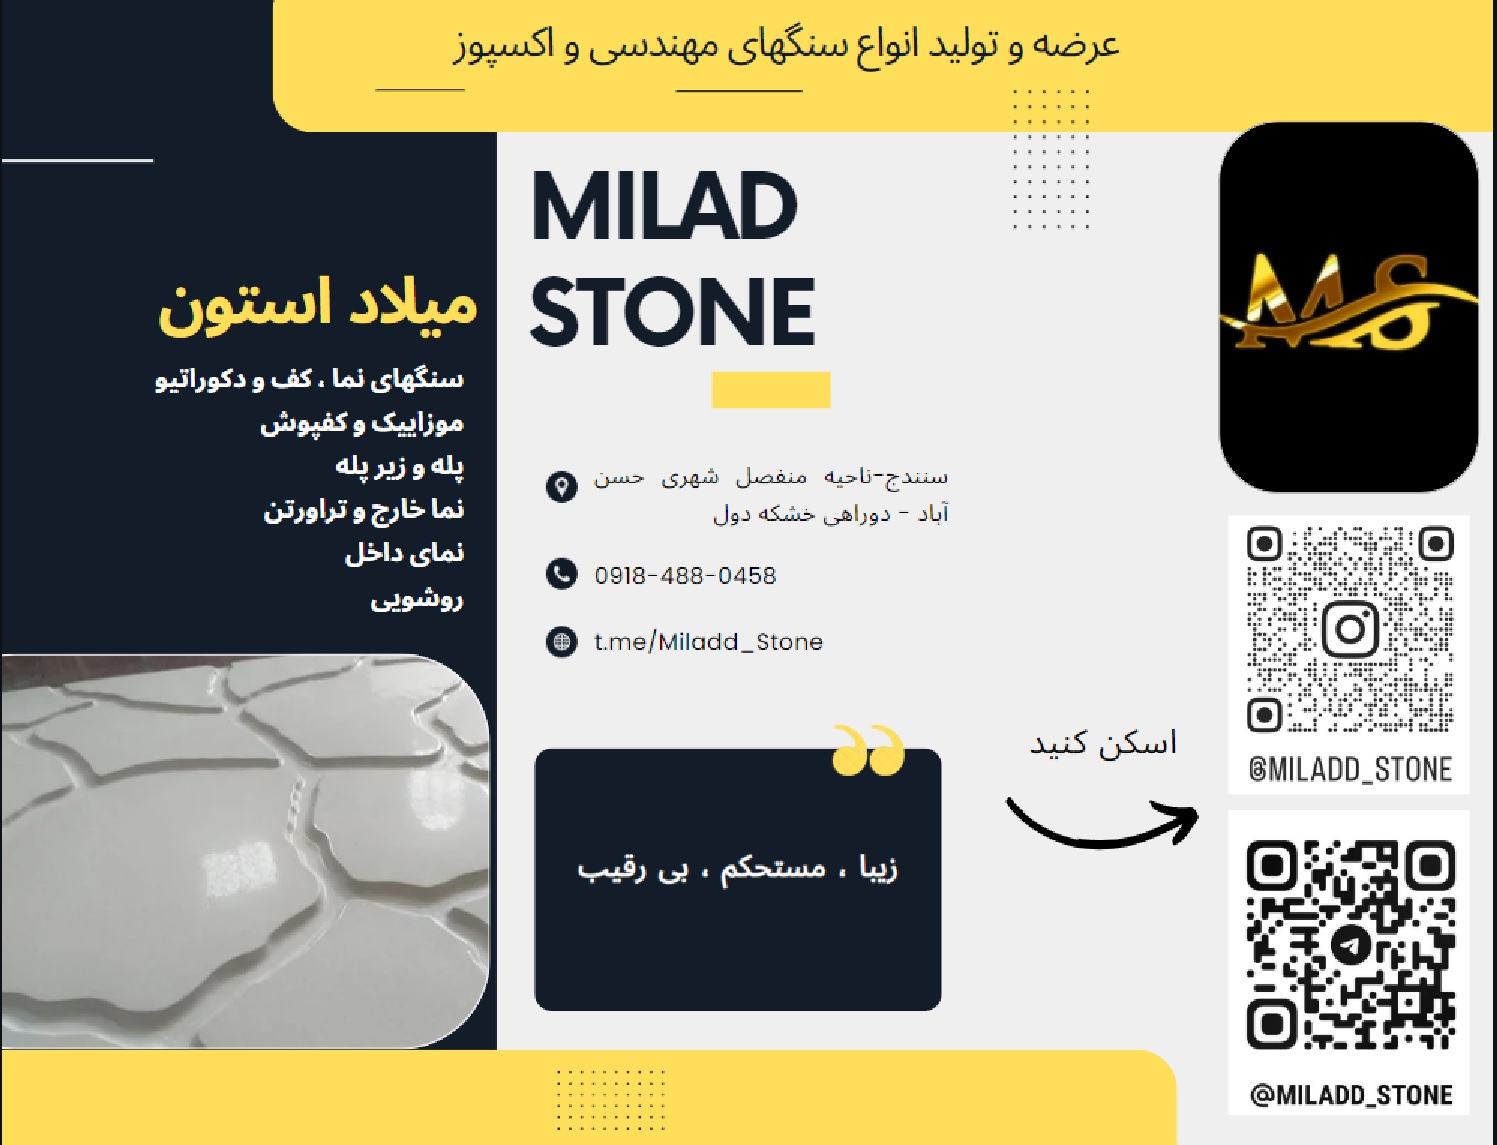 صنایع سنگی بهرامی - میلاد استون - Milad Stone